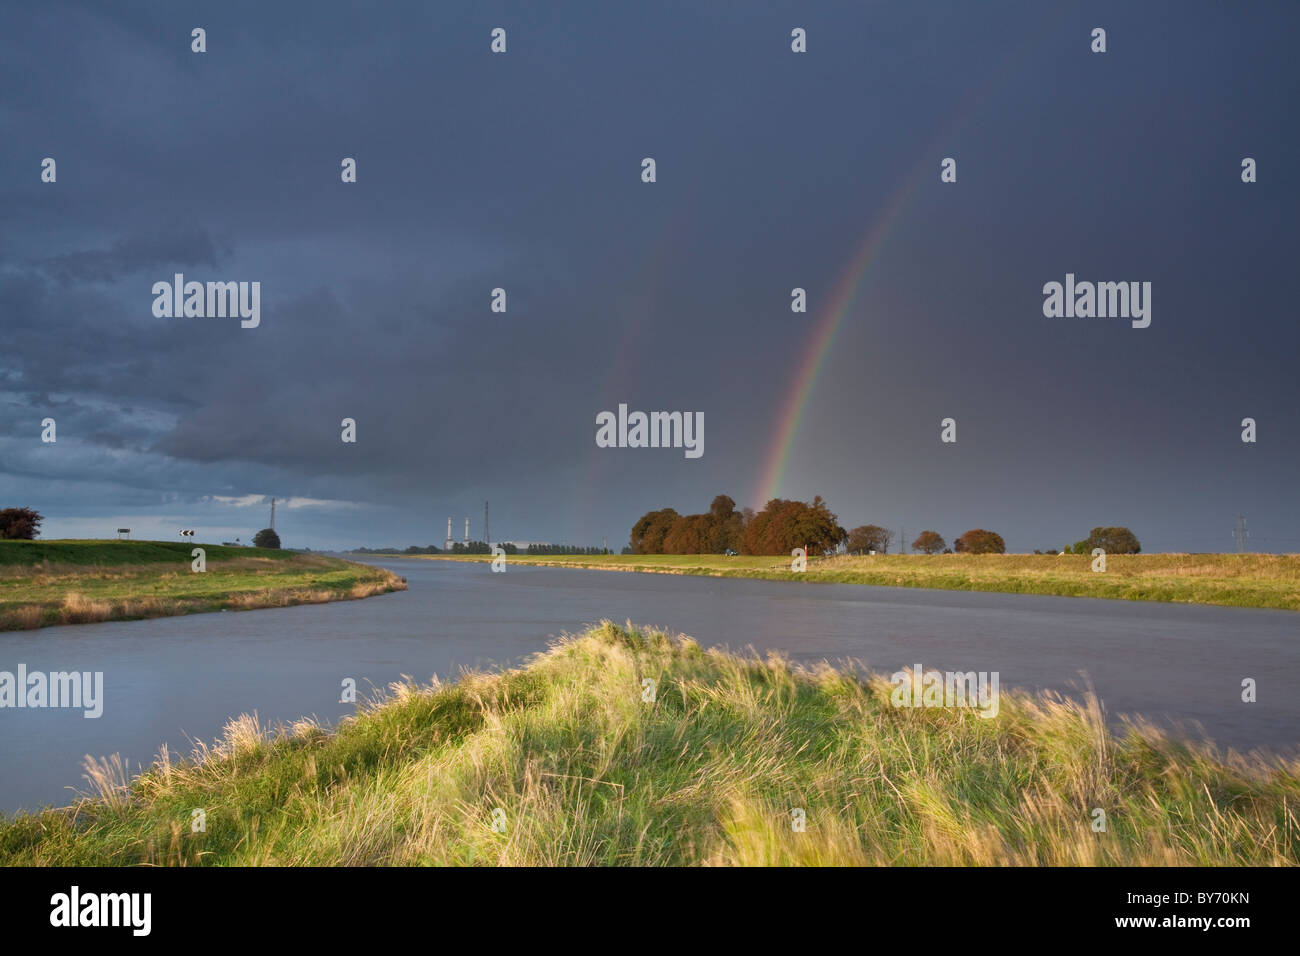 Dramatische Regenbogen über den Fluss Nene vor üblen Anker im Venn auf der Cambridgeshire-Seite der Grenze Cambrid & Lincolnshire. Stockfoto